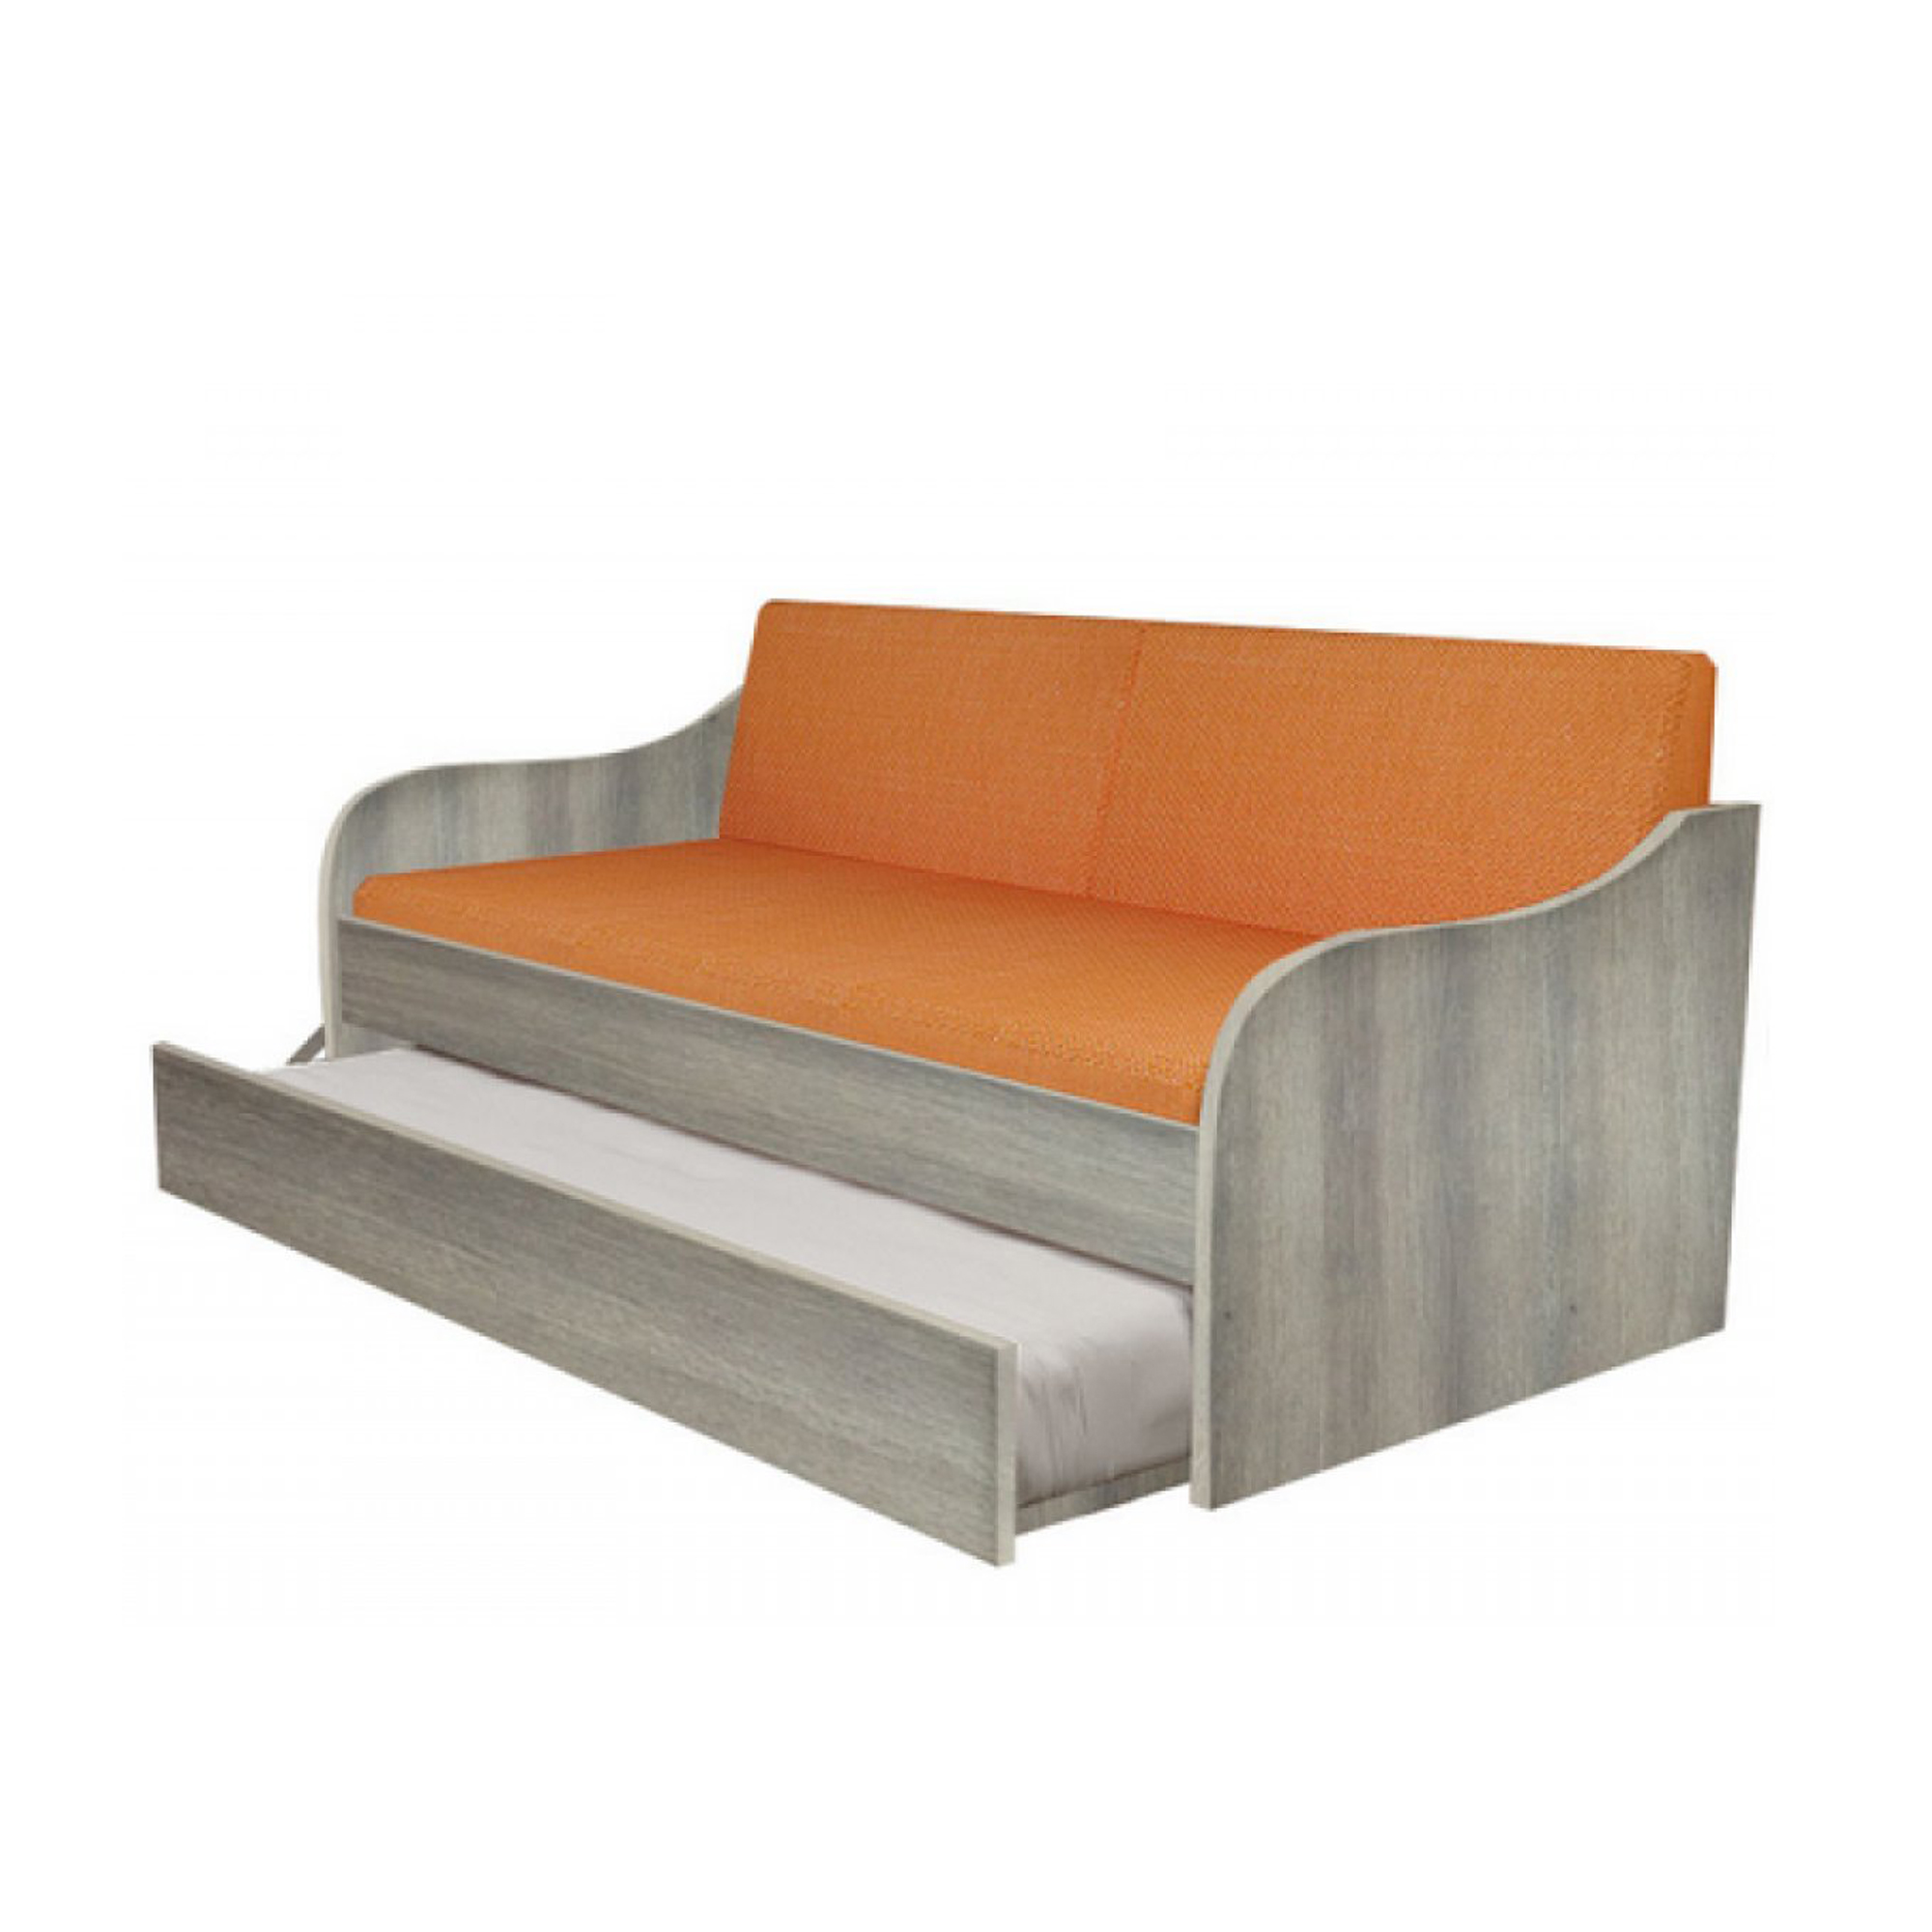 Κρεβάτι-καναπές "SILKY" με συρρόμενο κρεβάτι σε χρώμα σταχτί 80x190